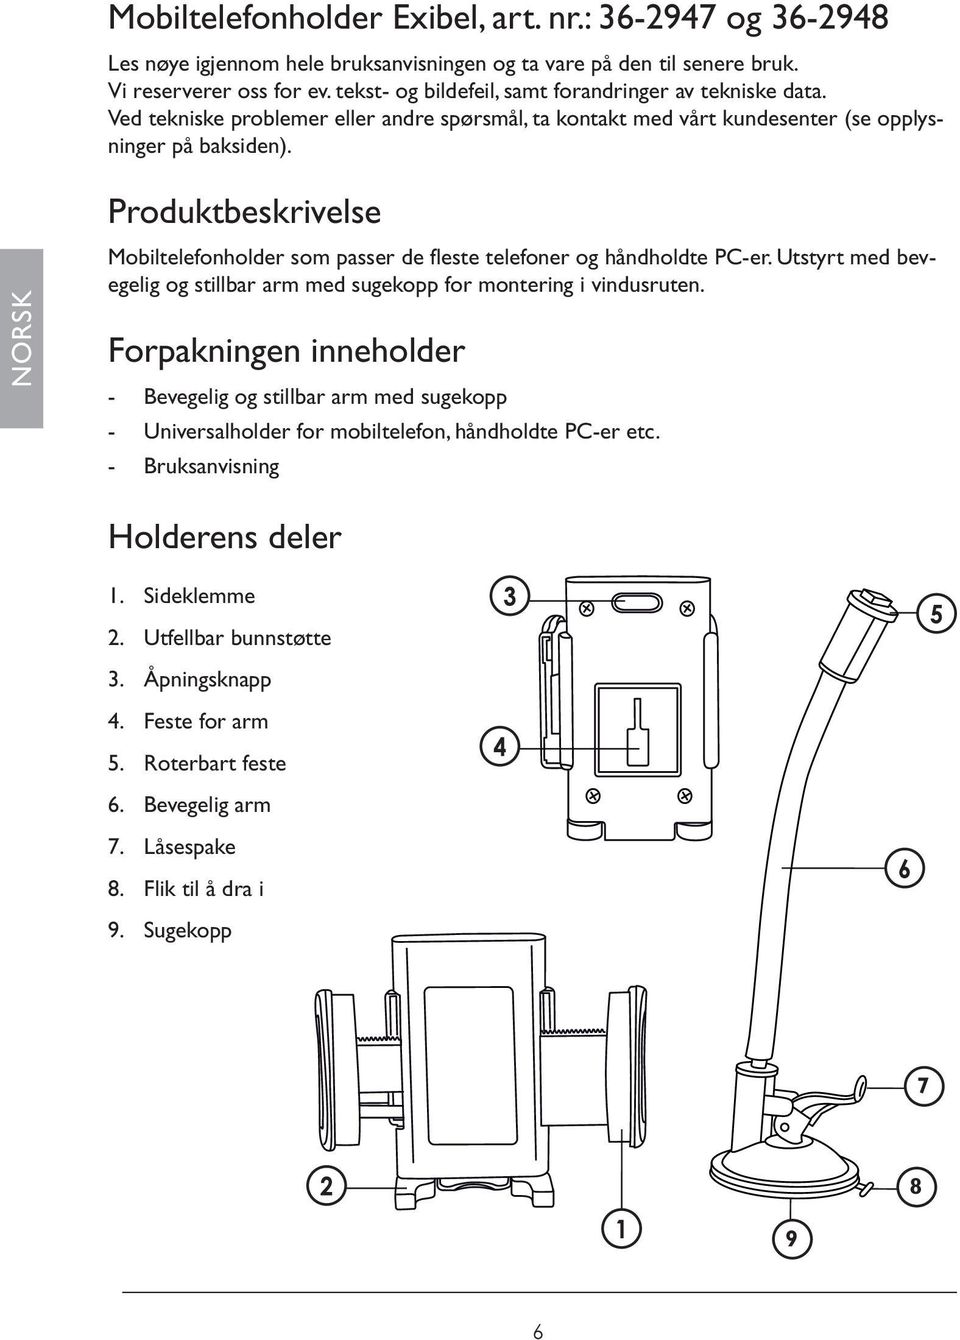 NORSK Produktbeskrivelse Mobiltelefonholder som passer de fleste telefoner og håndholdte PC-er. Utstyrt med bevegelig og stillbar arm med sugekopp for montering i vindusruten.